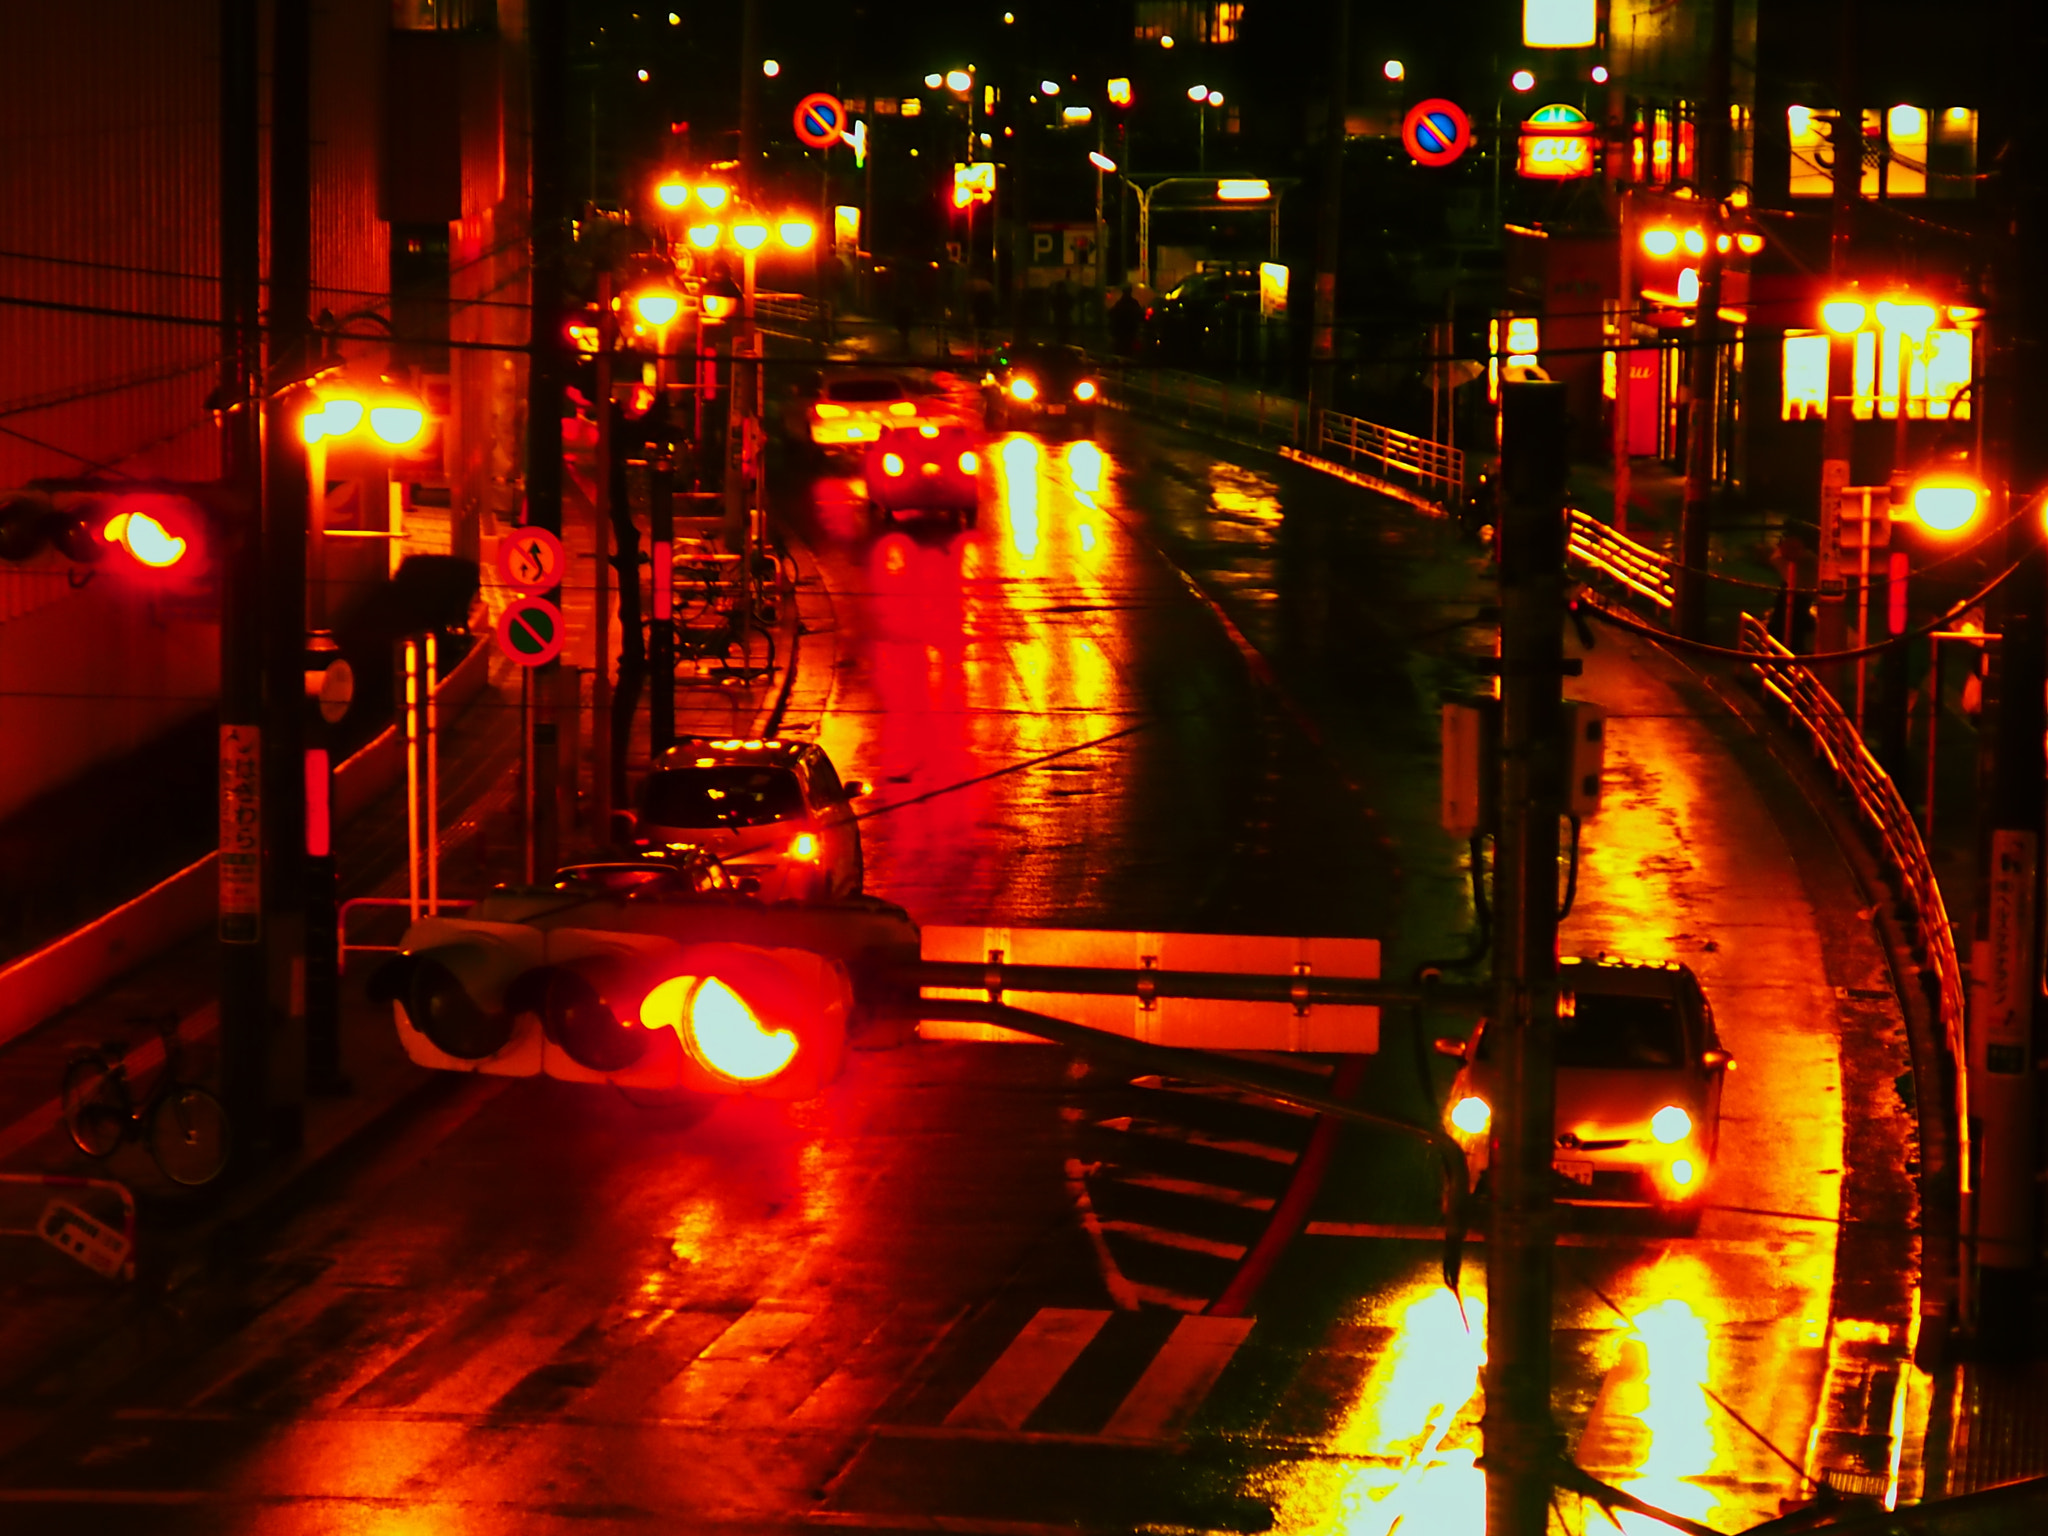 Olympus Stylus XZ-10 sample photo. Rainy night photography